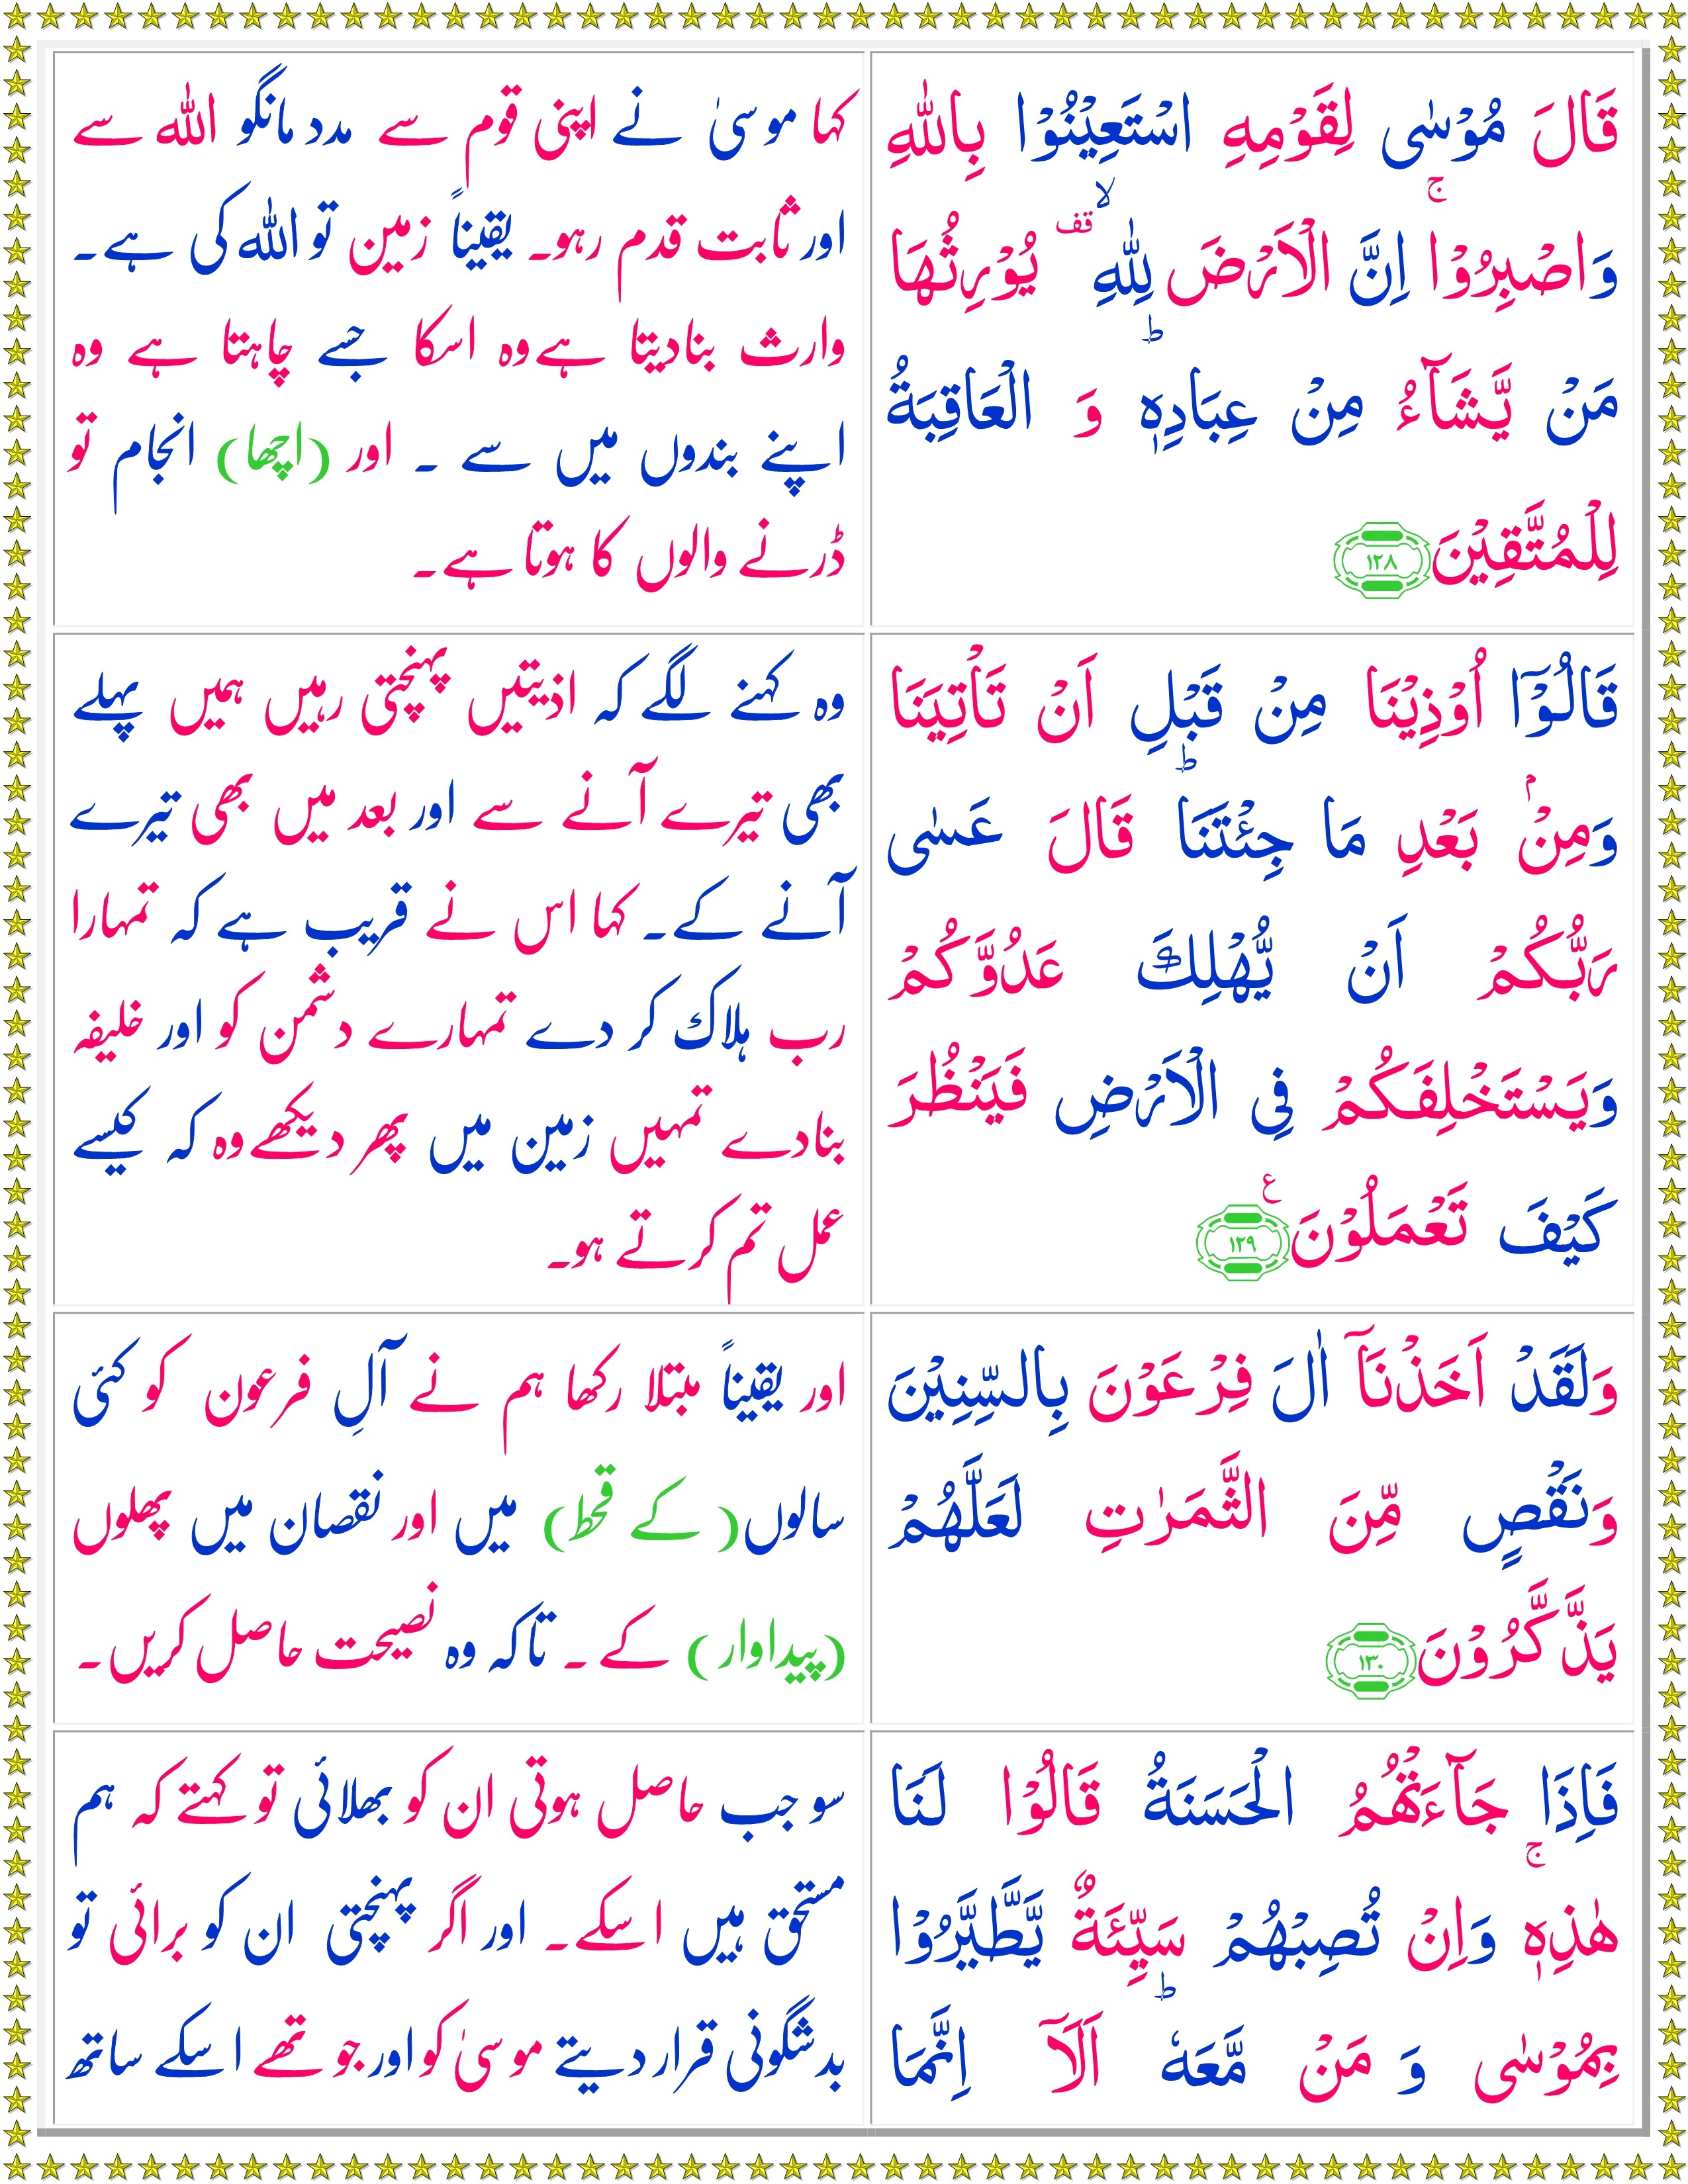 Surah Al-Araaf (Urdu) - Page 4 of 6 - Quran o Sunnat